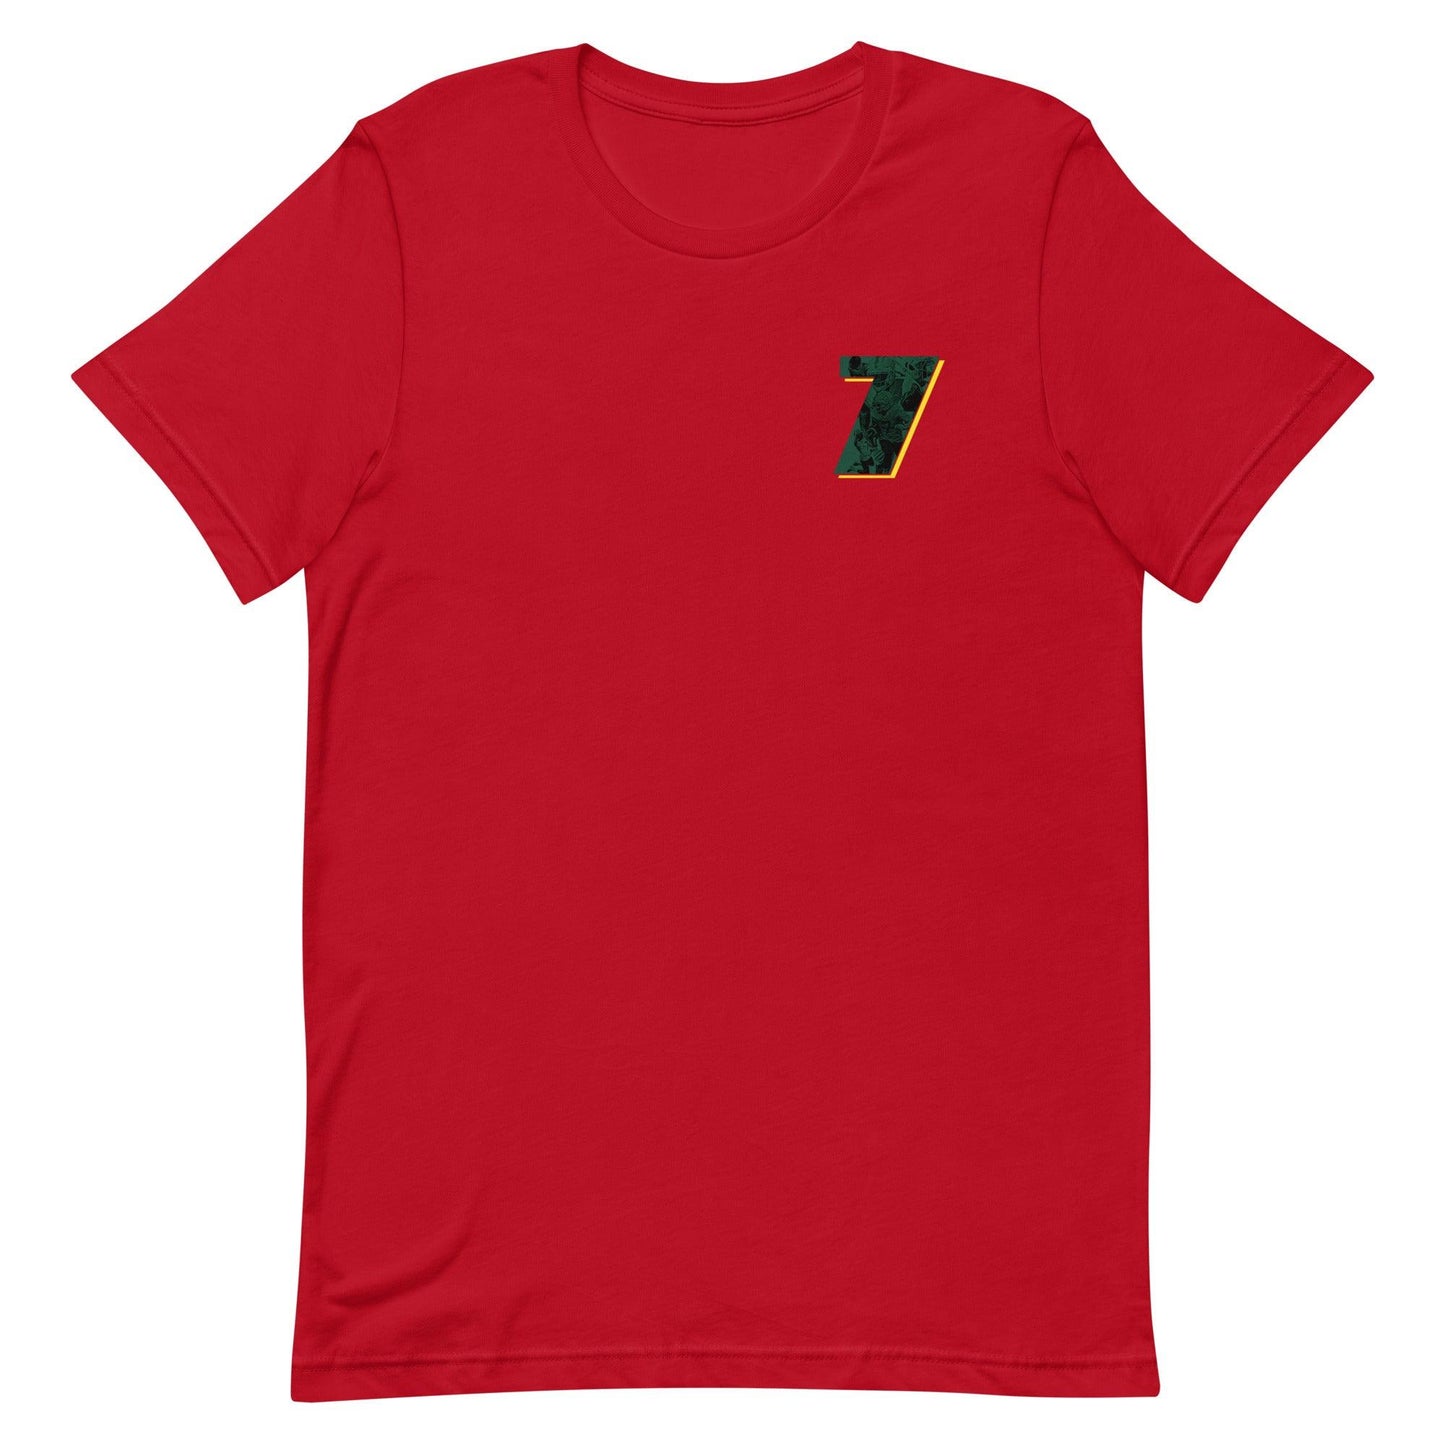 Seven McGee "7" t-shirt - Fan Arch